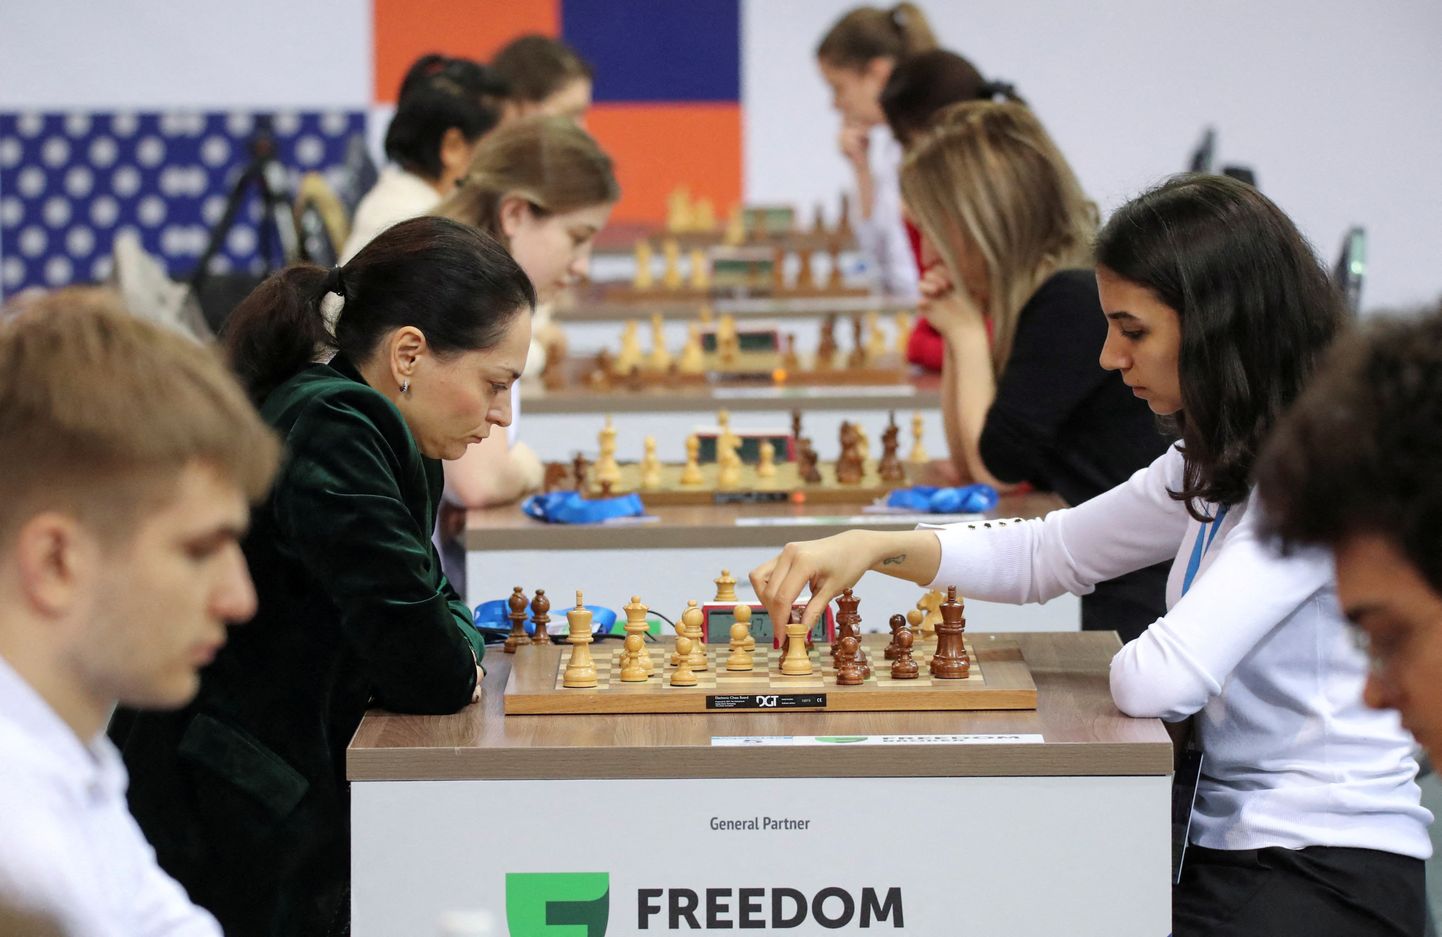 Male populaarsuse järsk kasv on ummikusse jooksutanud maailma kõige populaarsema malekeskkonna Chess.com, mis piirab tipptunnil maletajate ligipääsu. Foto on illustratiivne.